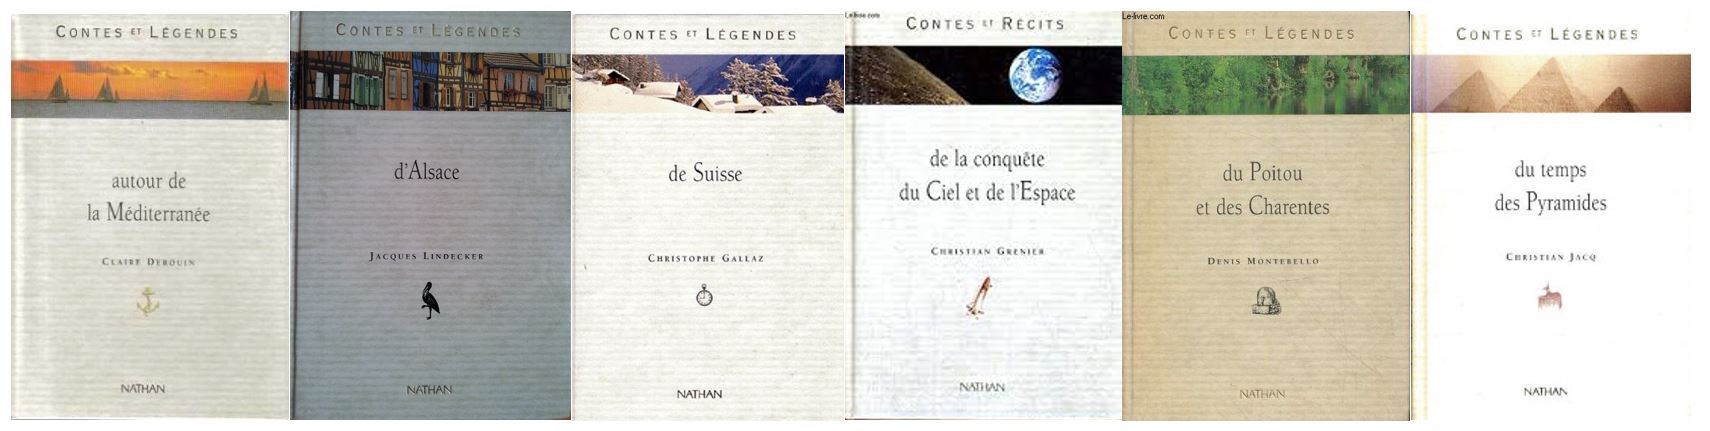 contes - Nathan : la collection Contes et légendes - Page 2 B6576d5de43adca68cf6b8c93e4203e8629e06a5